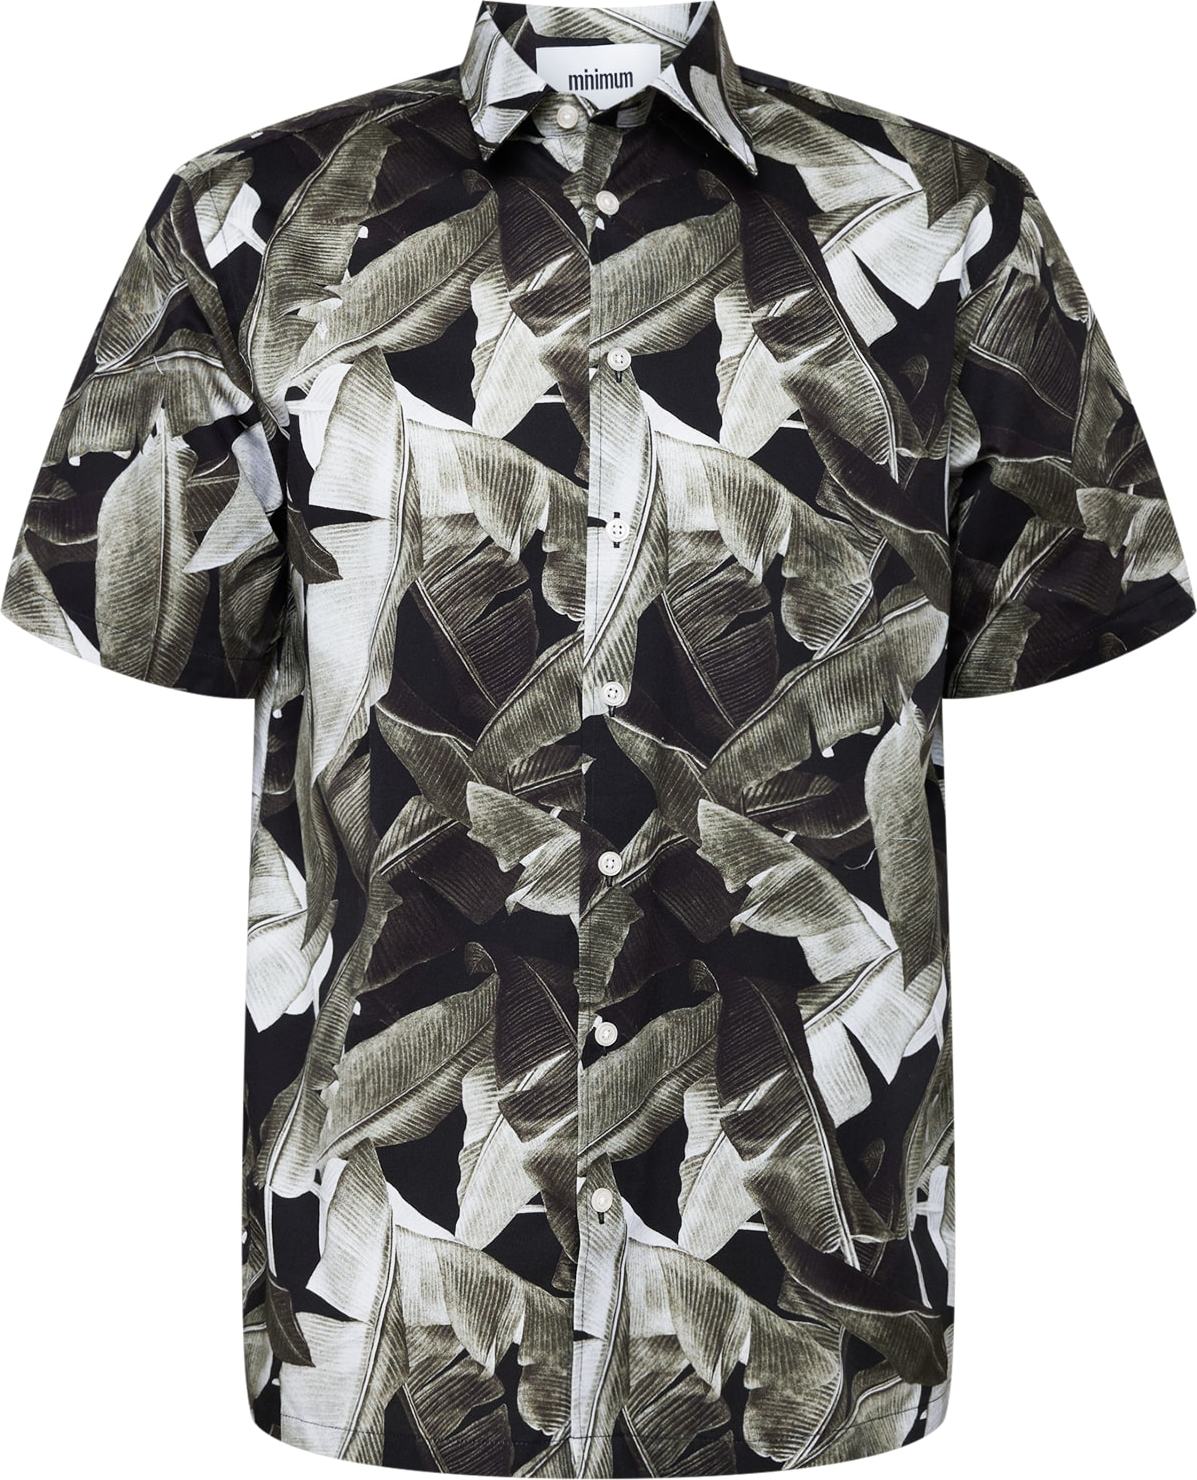 minimum Košile khaki / černá / světle šedá